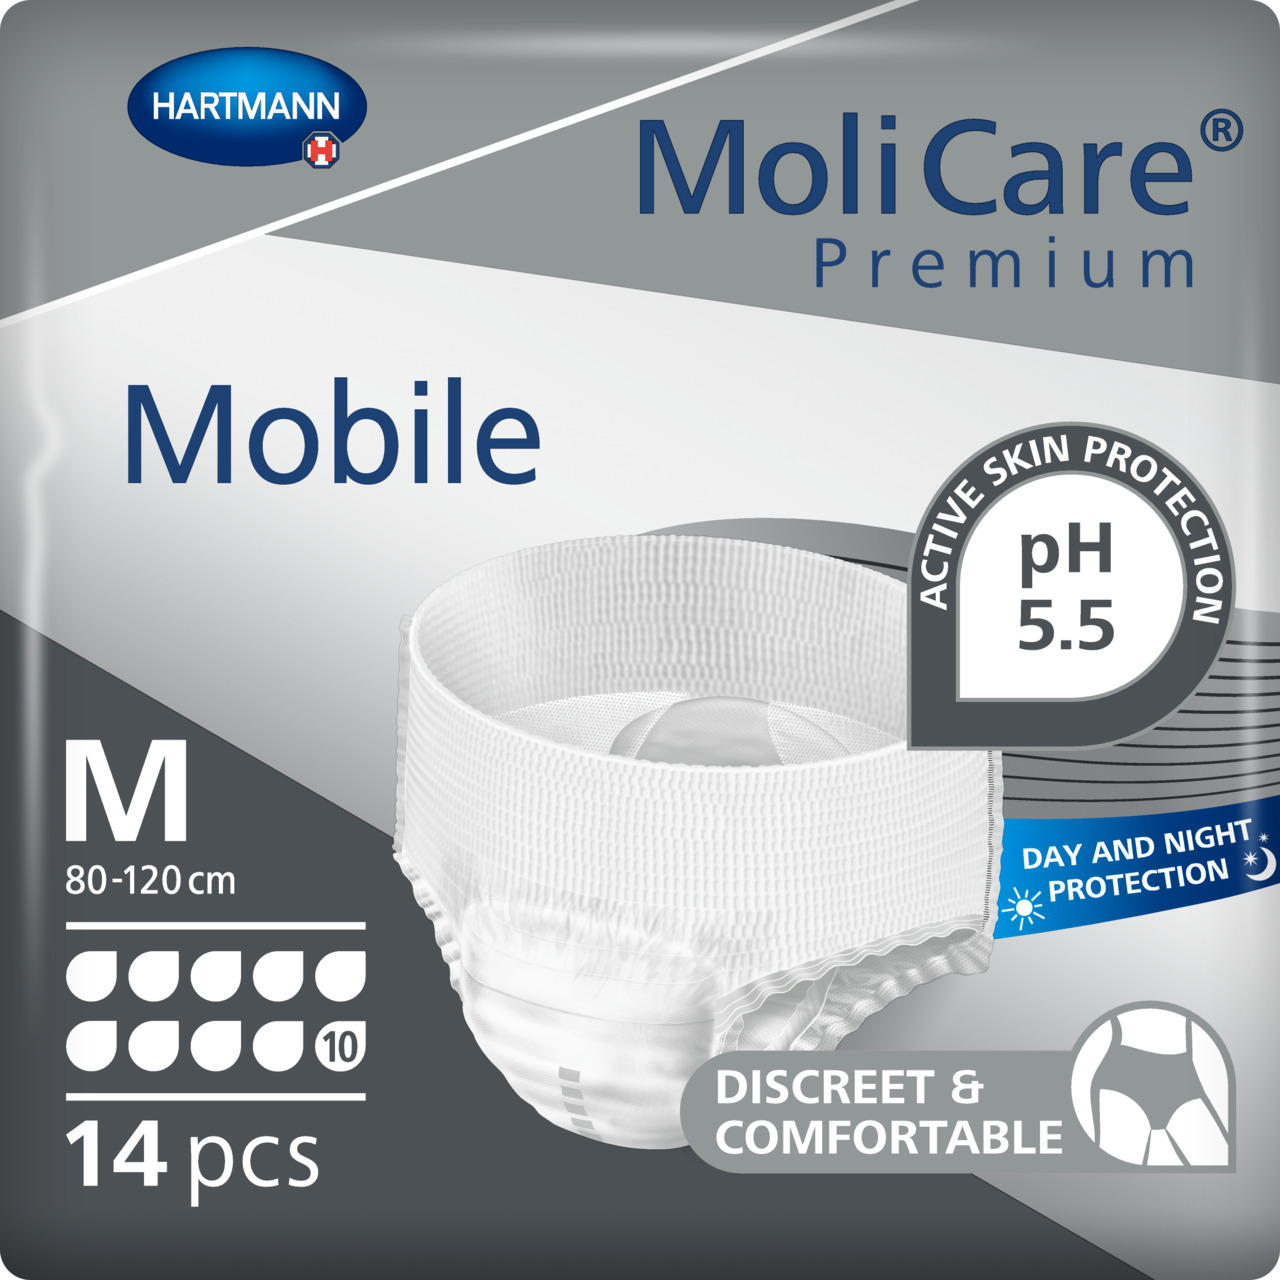 MoliCare Premium Mobile 10 Drops